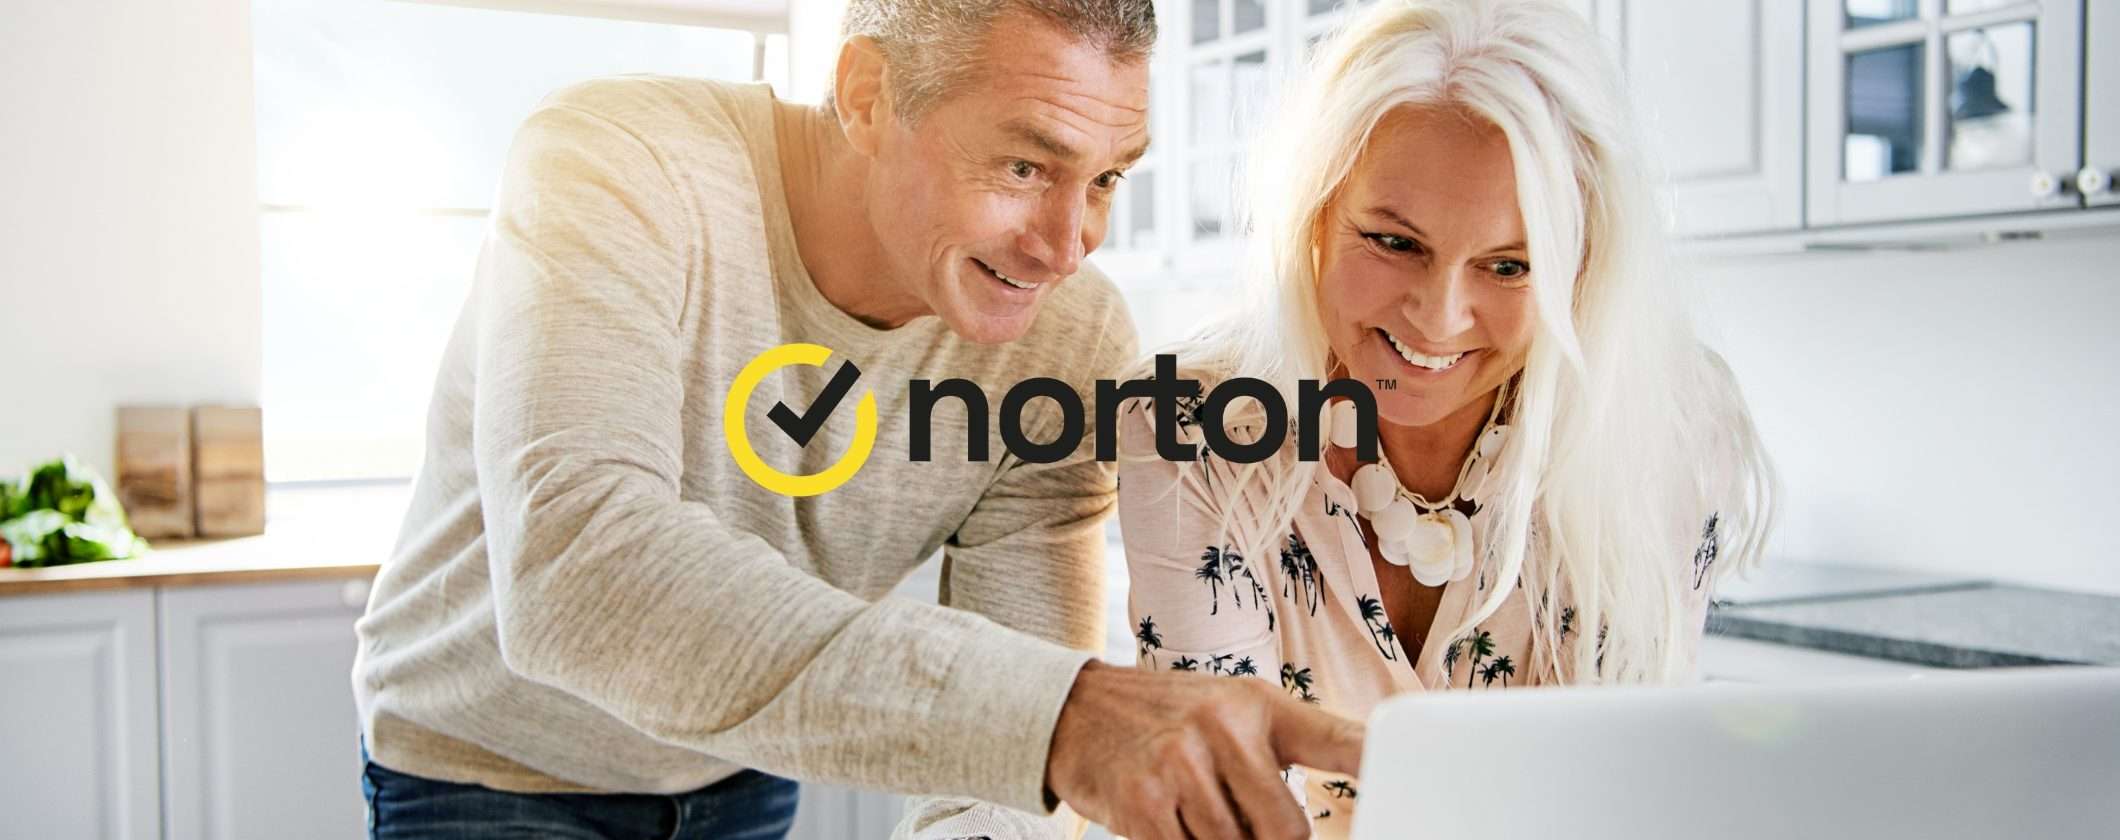 Ottieni Norton 360 Standard al 60% di sconto con questo link